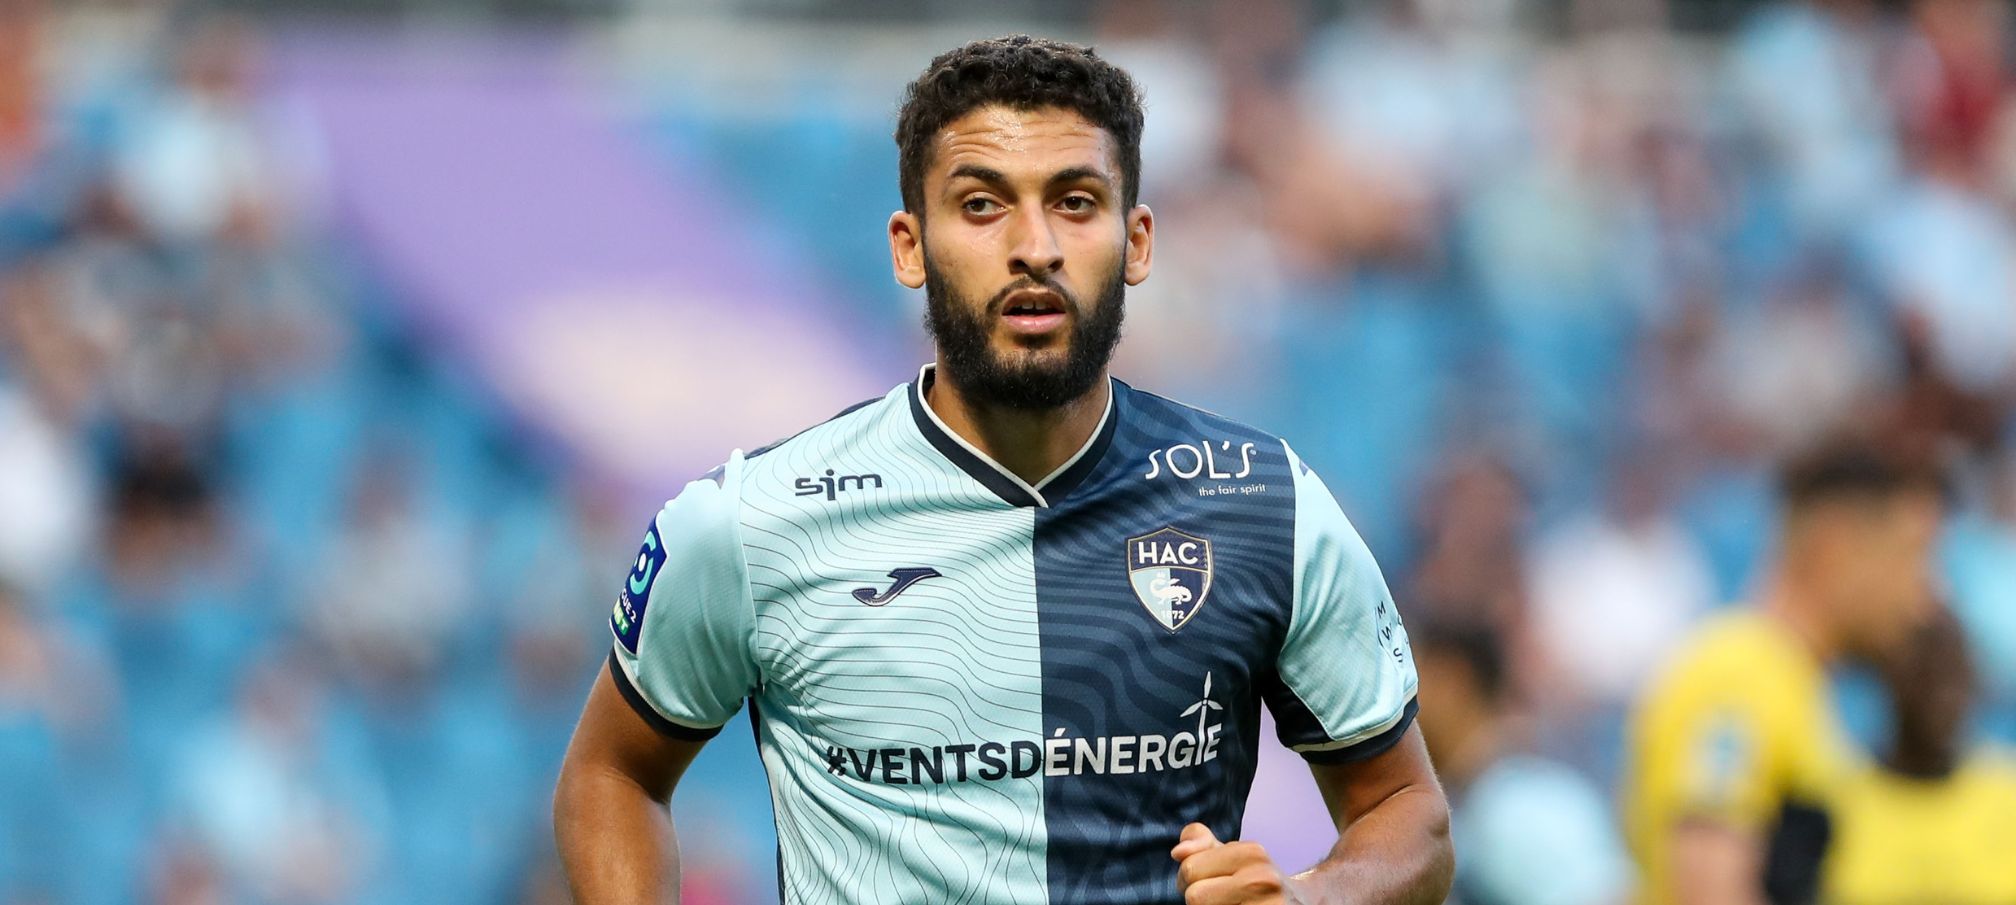 soccer picks Nabil Alioui Le Havre predictions best bet odds